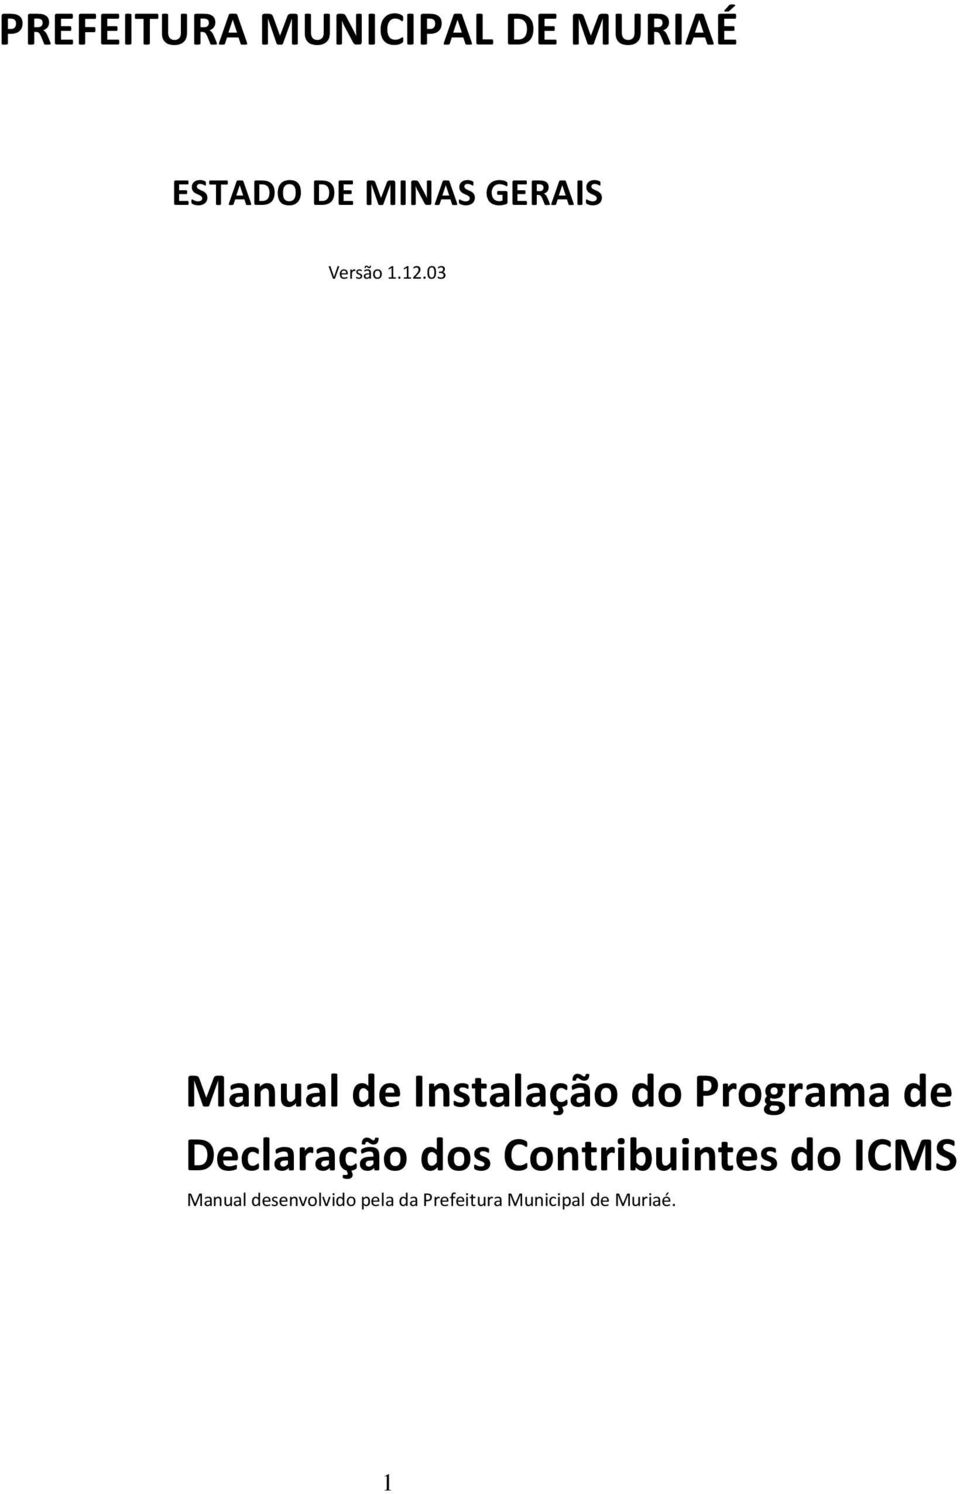 03 Manual de Instalação do Programa de Declaração